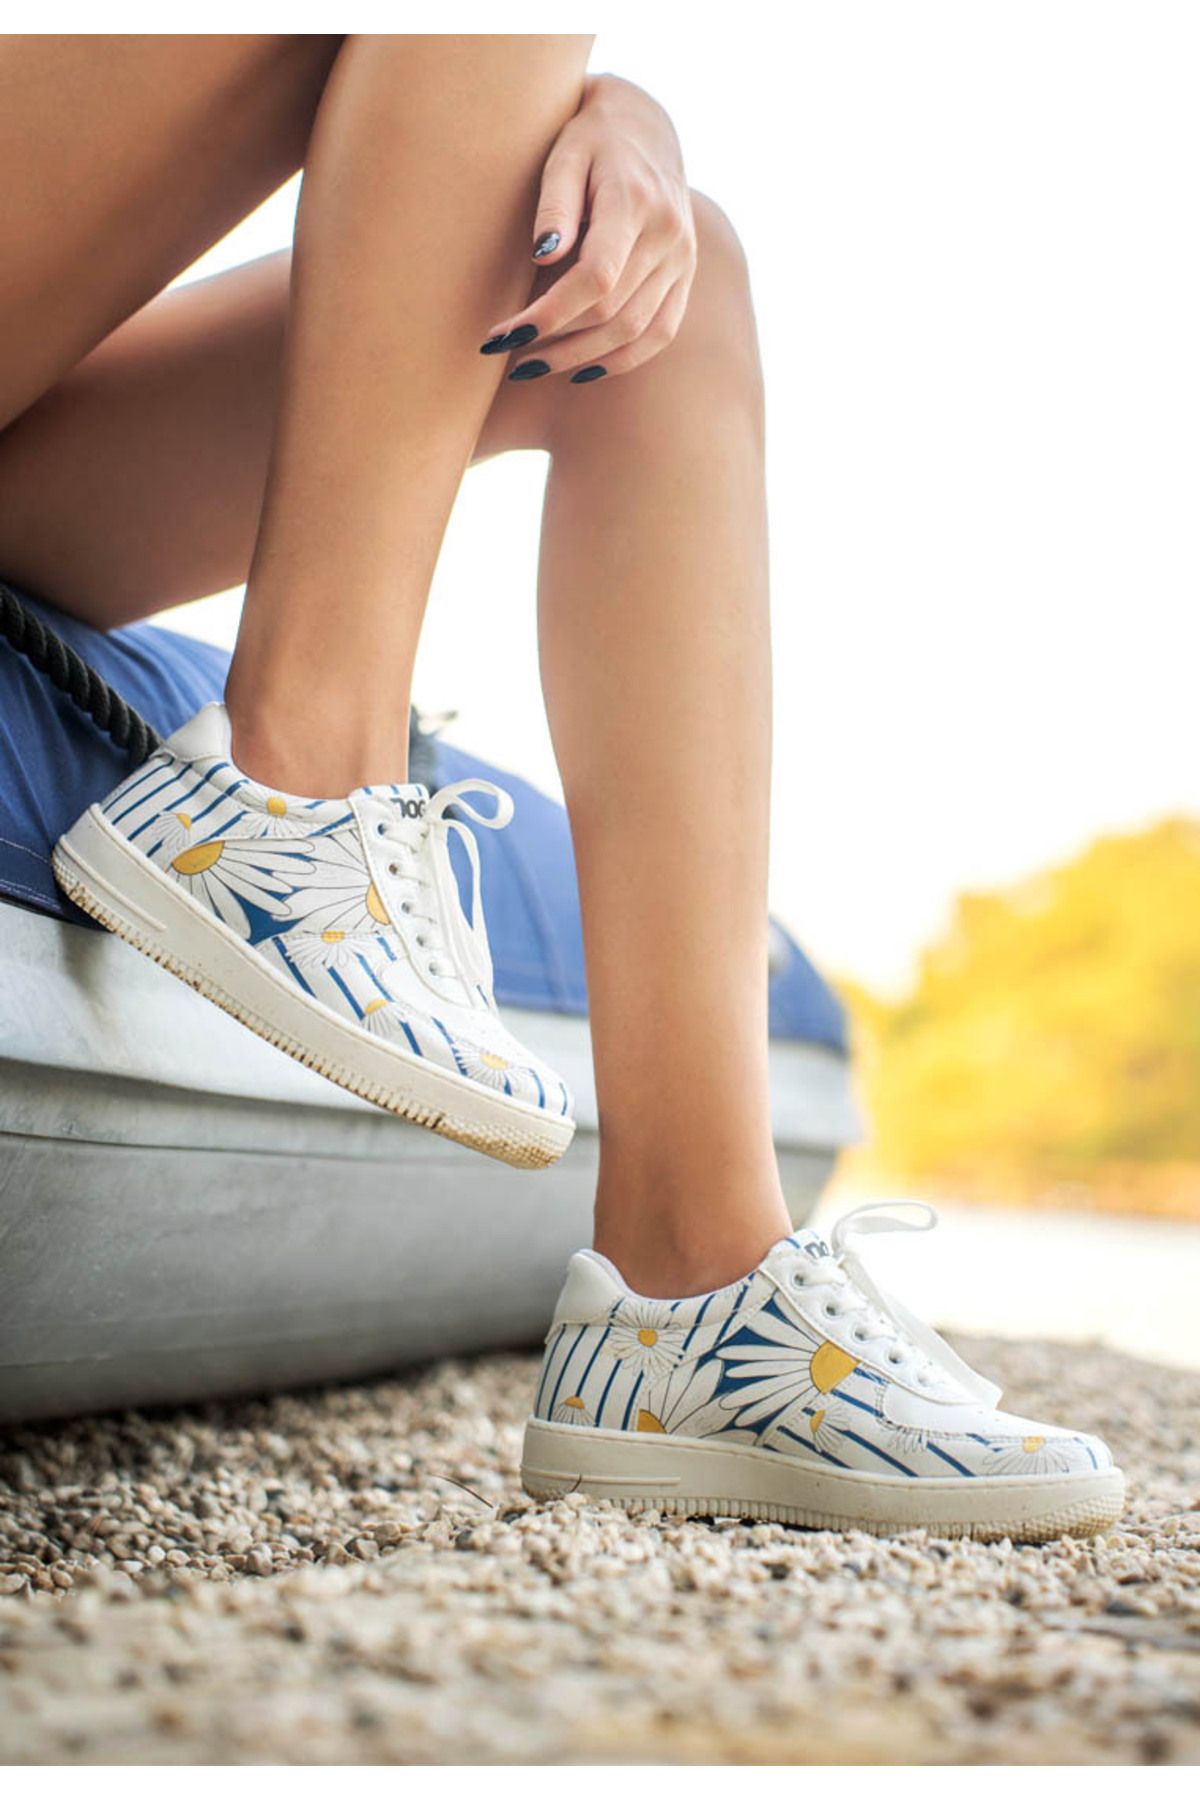 Dogo Kadın Vegan Deri Beyaz Sneakers - Daisy Stripes Tasarım